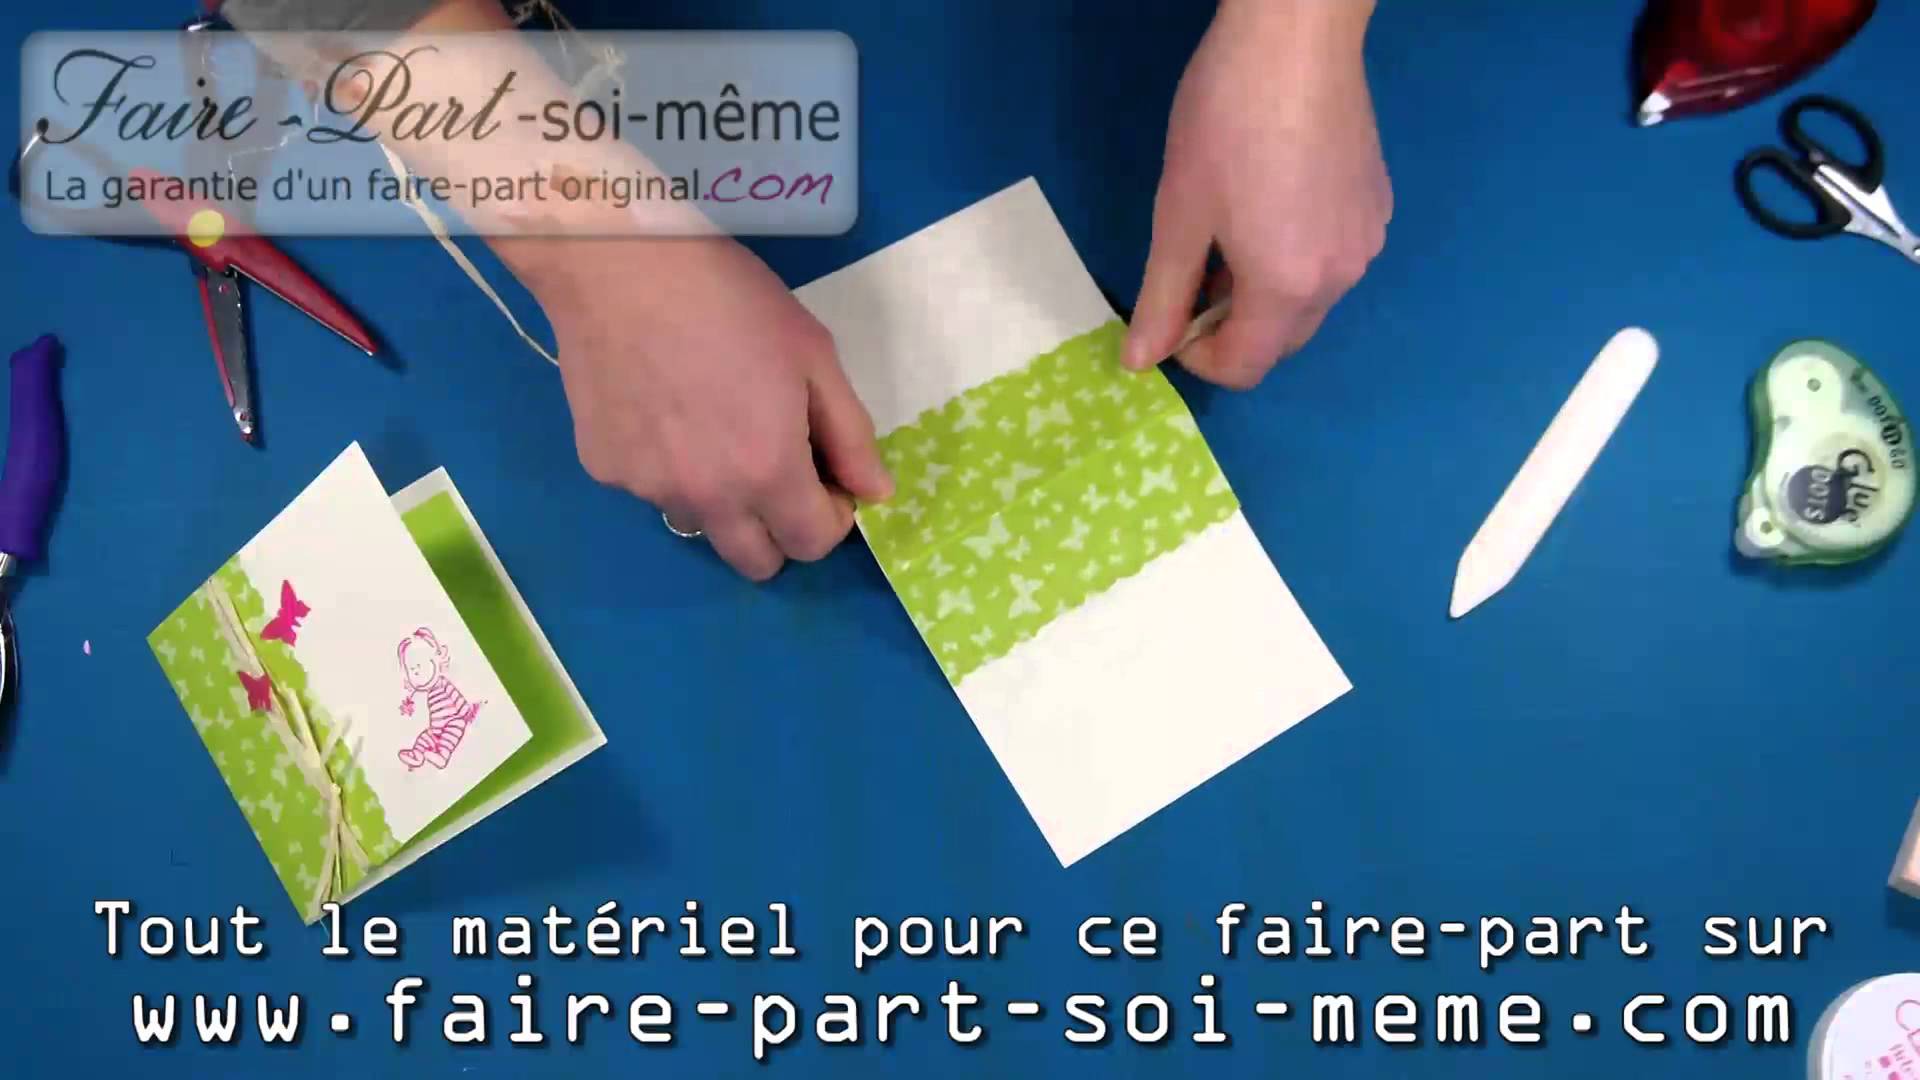 Www.faire-part-soi-meme.com